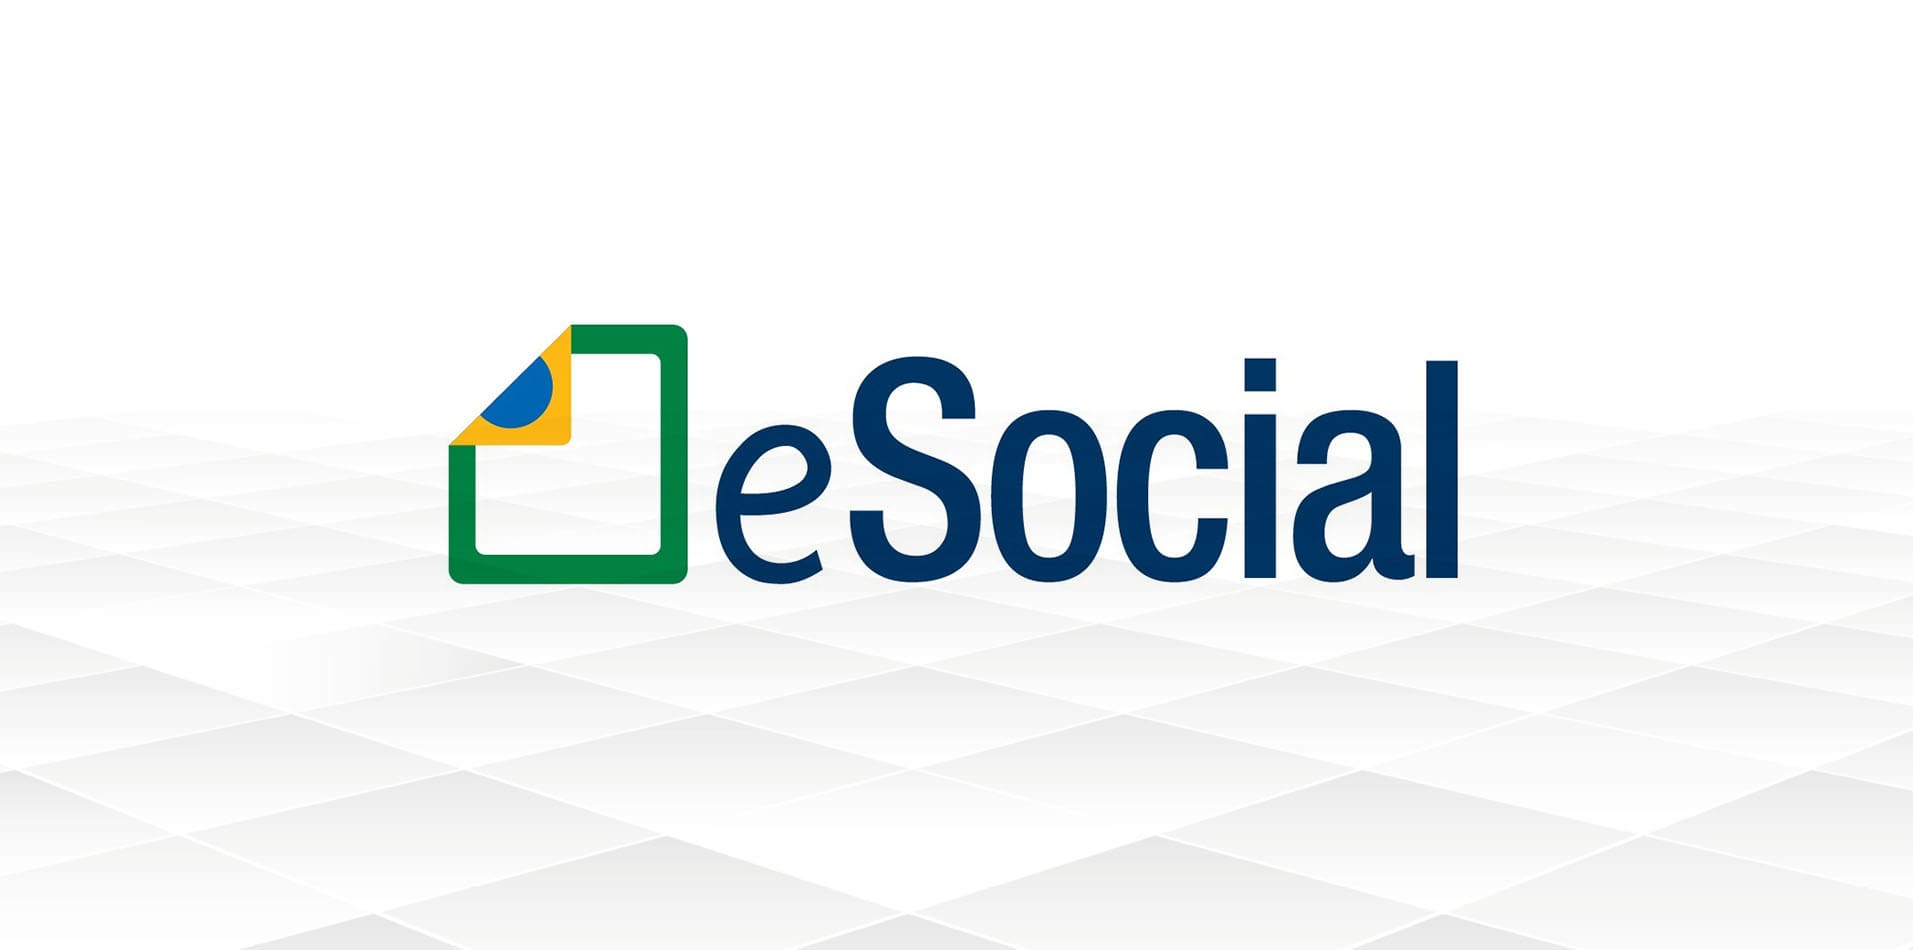 Foto do logo do sistema eSocial, que obteve algumas mudanças importantes para os empreendedores, colaboradores e contadores